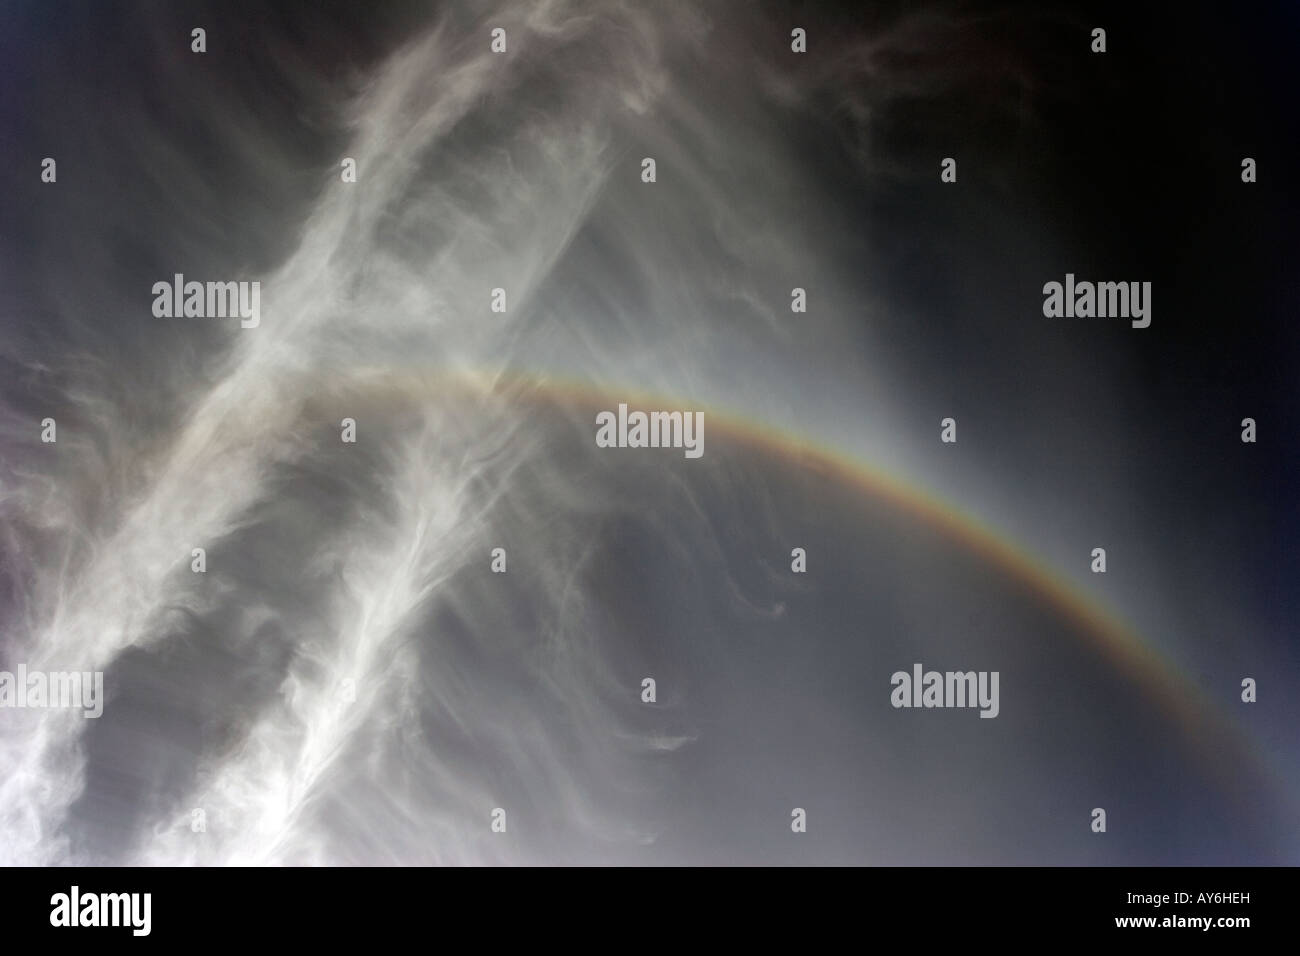 Atmosphärischen Halo oder Bogen, ein Regenbogen wie Variante hoch oben in Cirruswolken verursacht durch Brechung des Sonnenlichts durch Eiskristalle Stockfoto